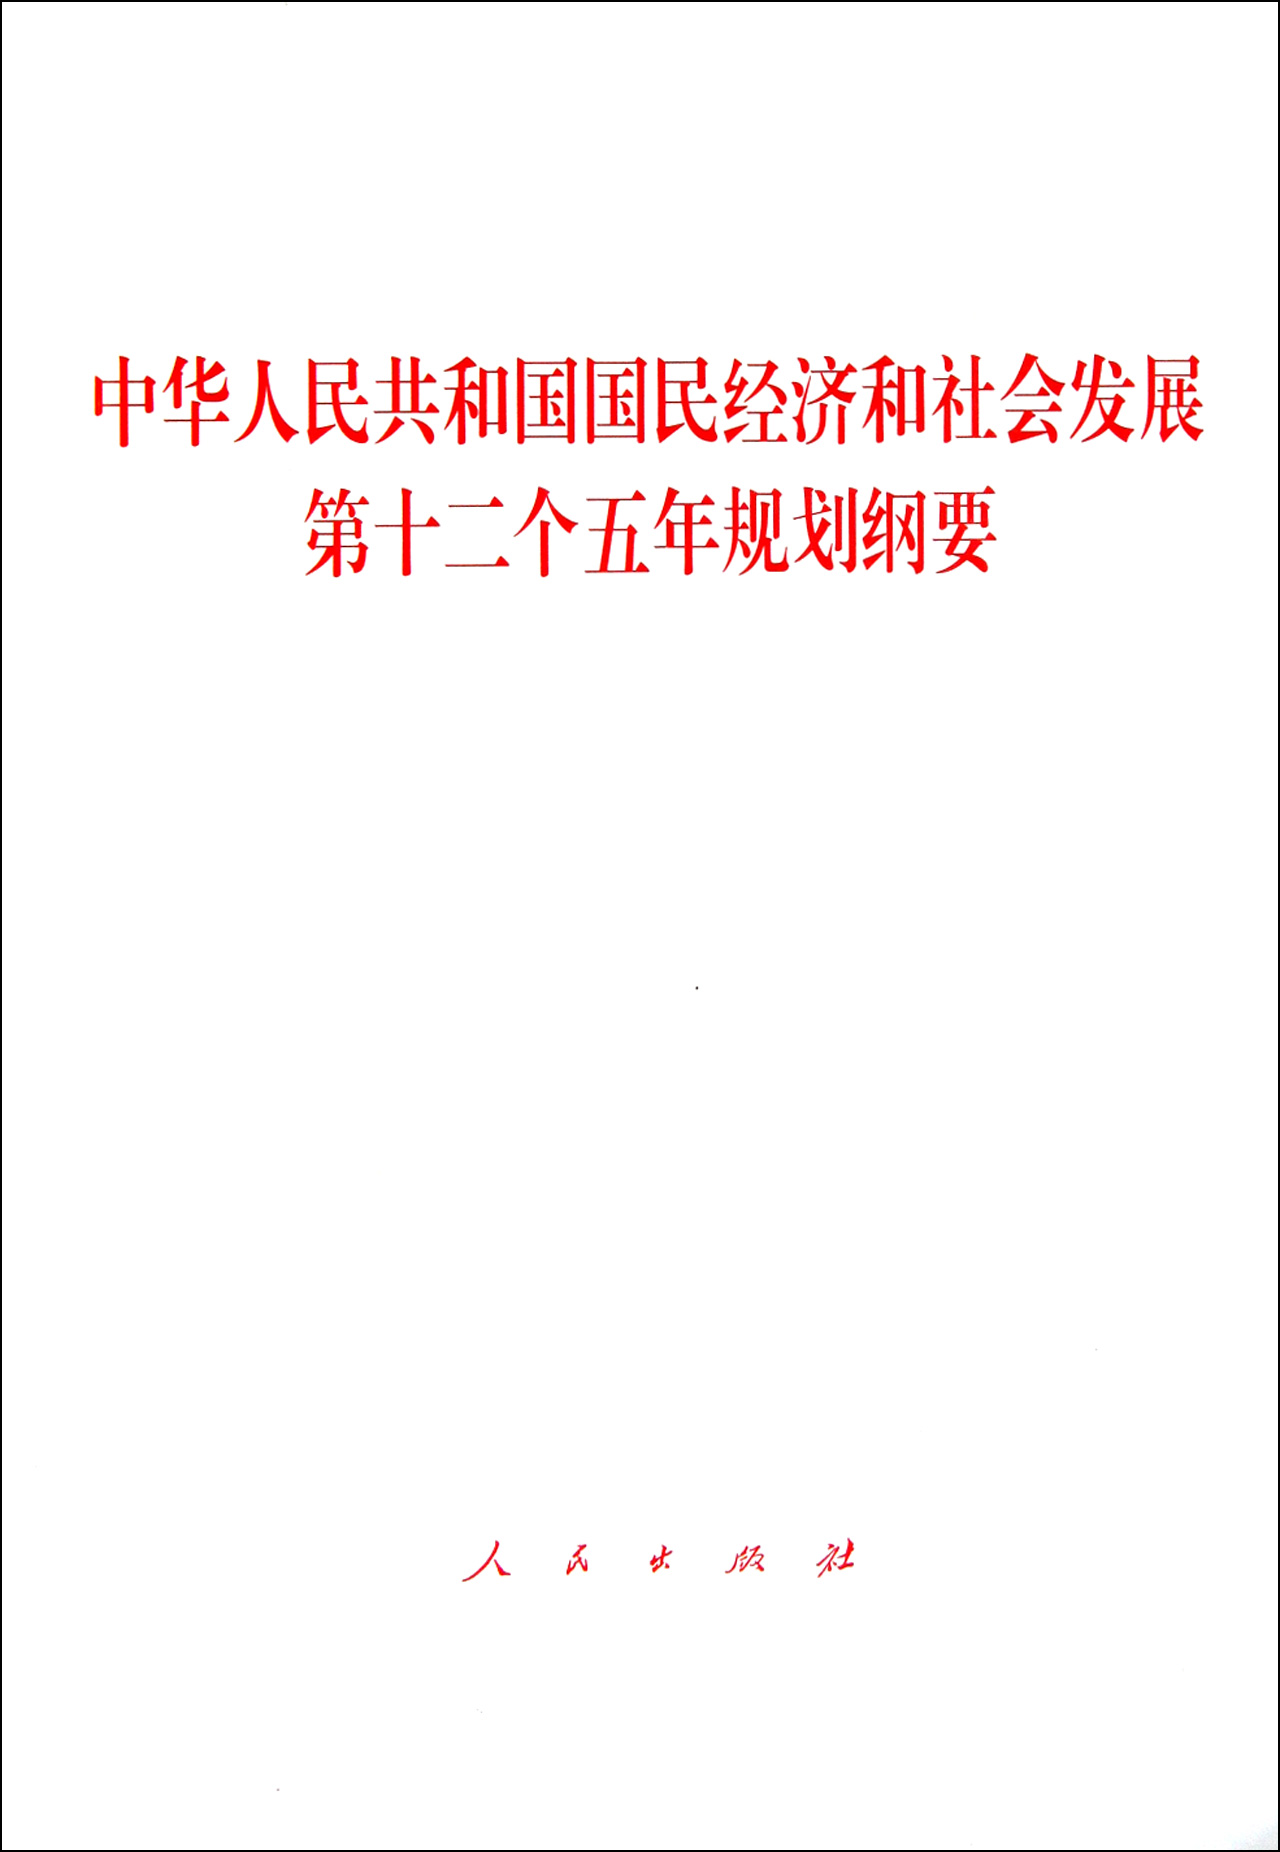 中華人民共和國國民經濟和社會發展第十二個五年規劃綱要(“十二五”規劃)